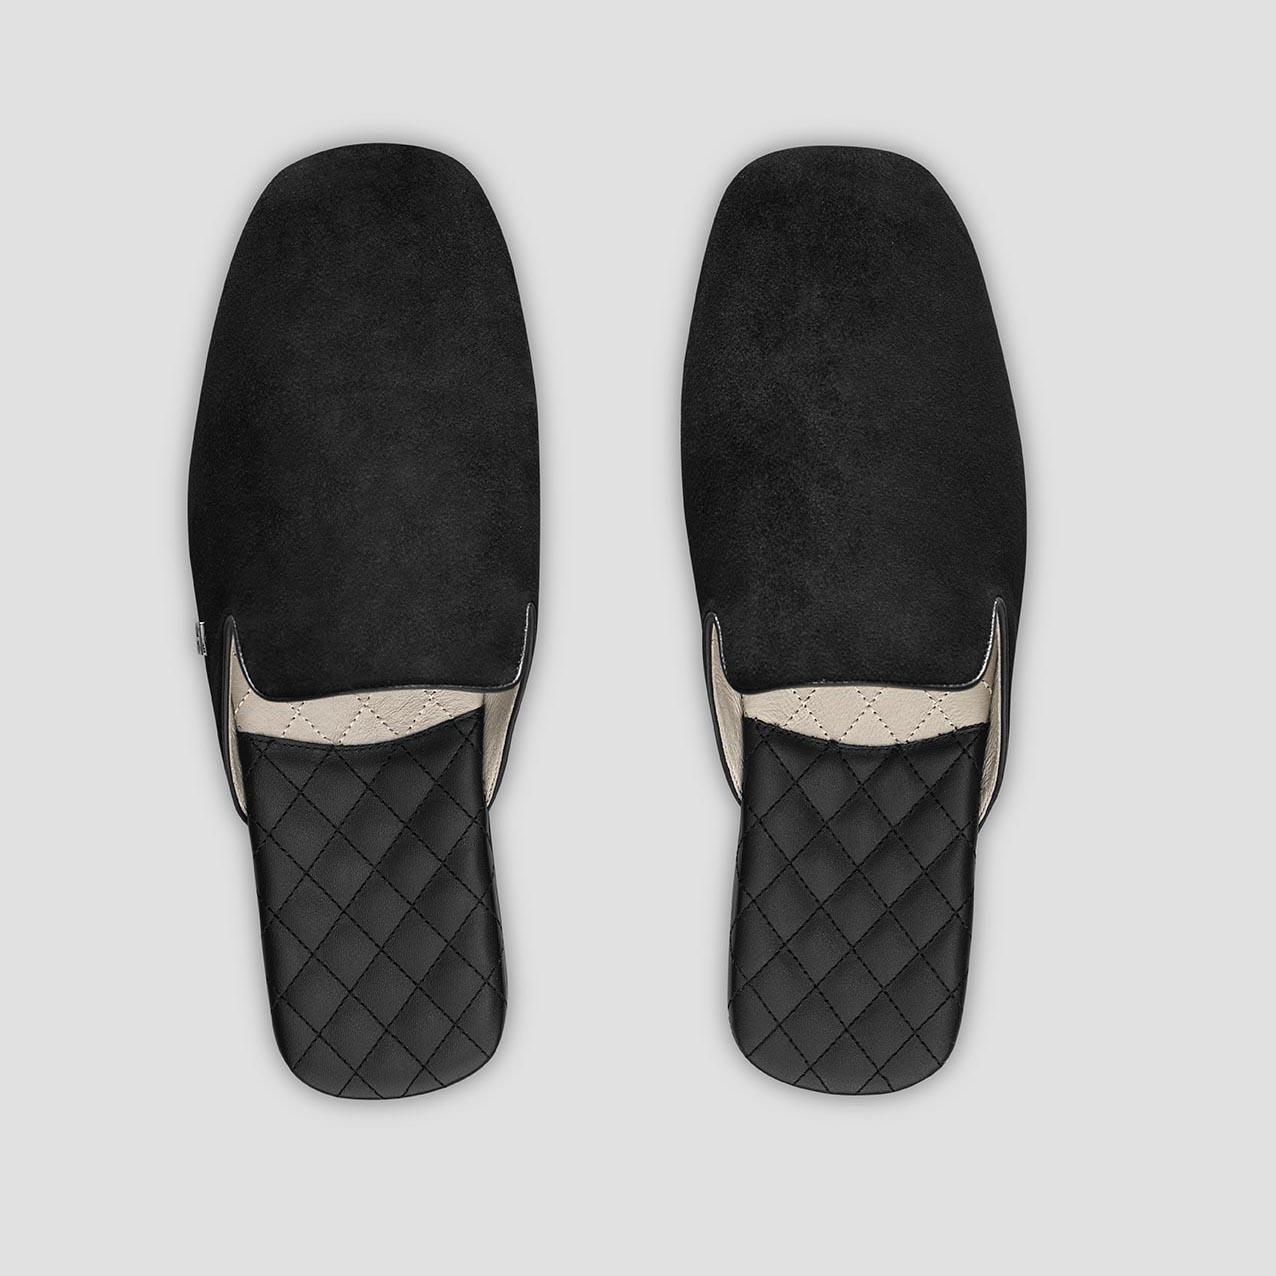 Тапочки Togas Реон черные мужские кожаные, размер 44-45 держатель для шланга размер s на липучке чёрный